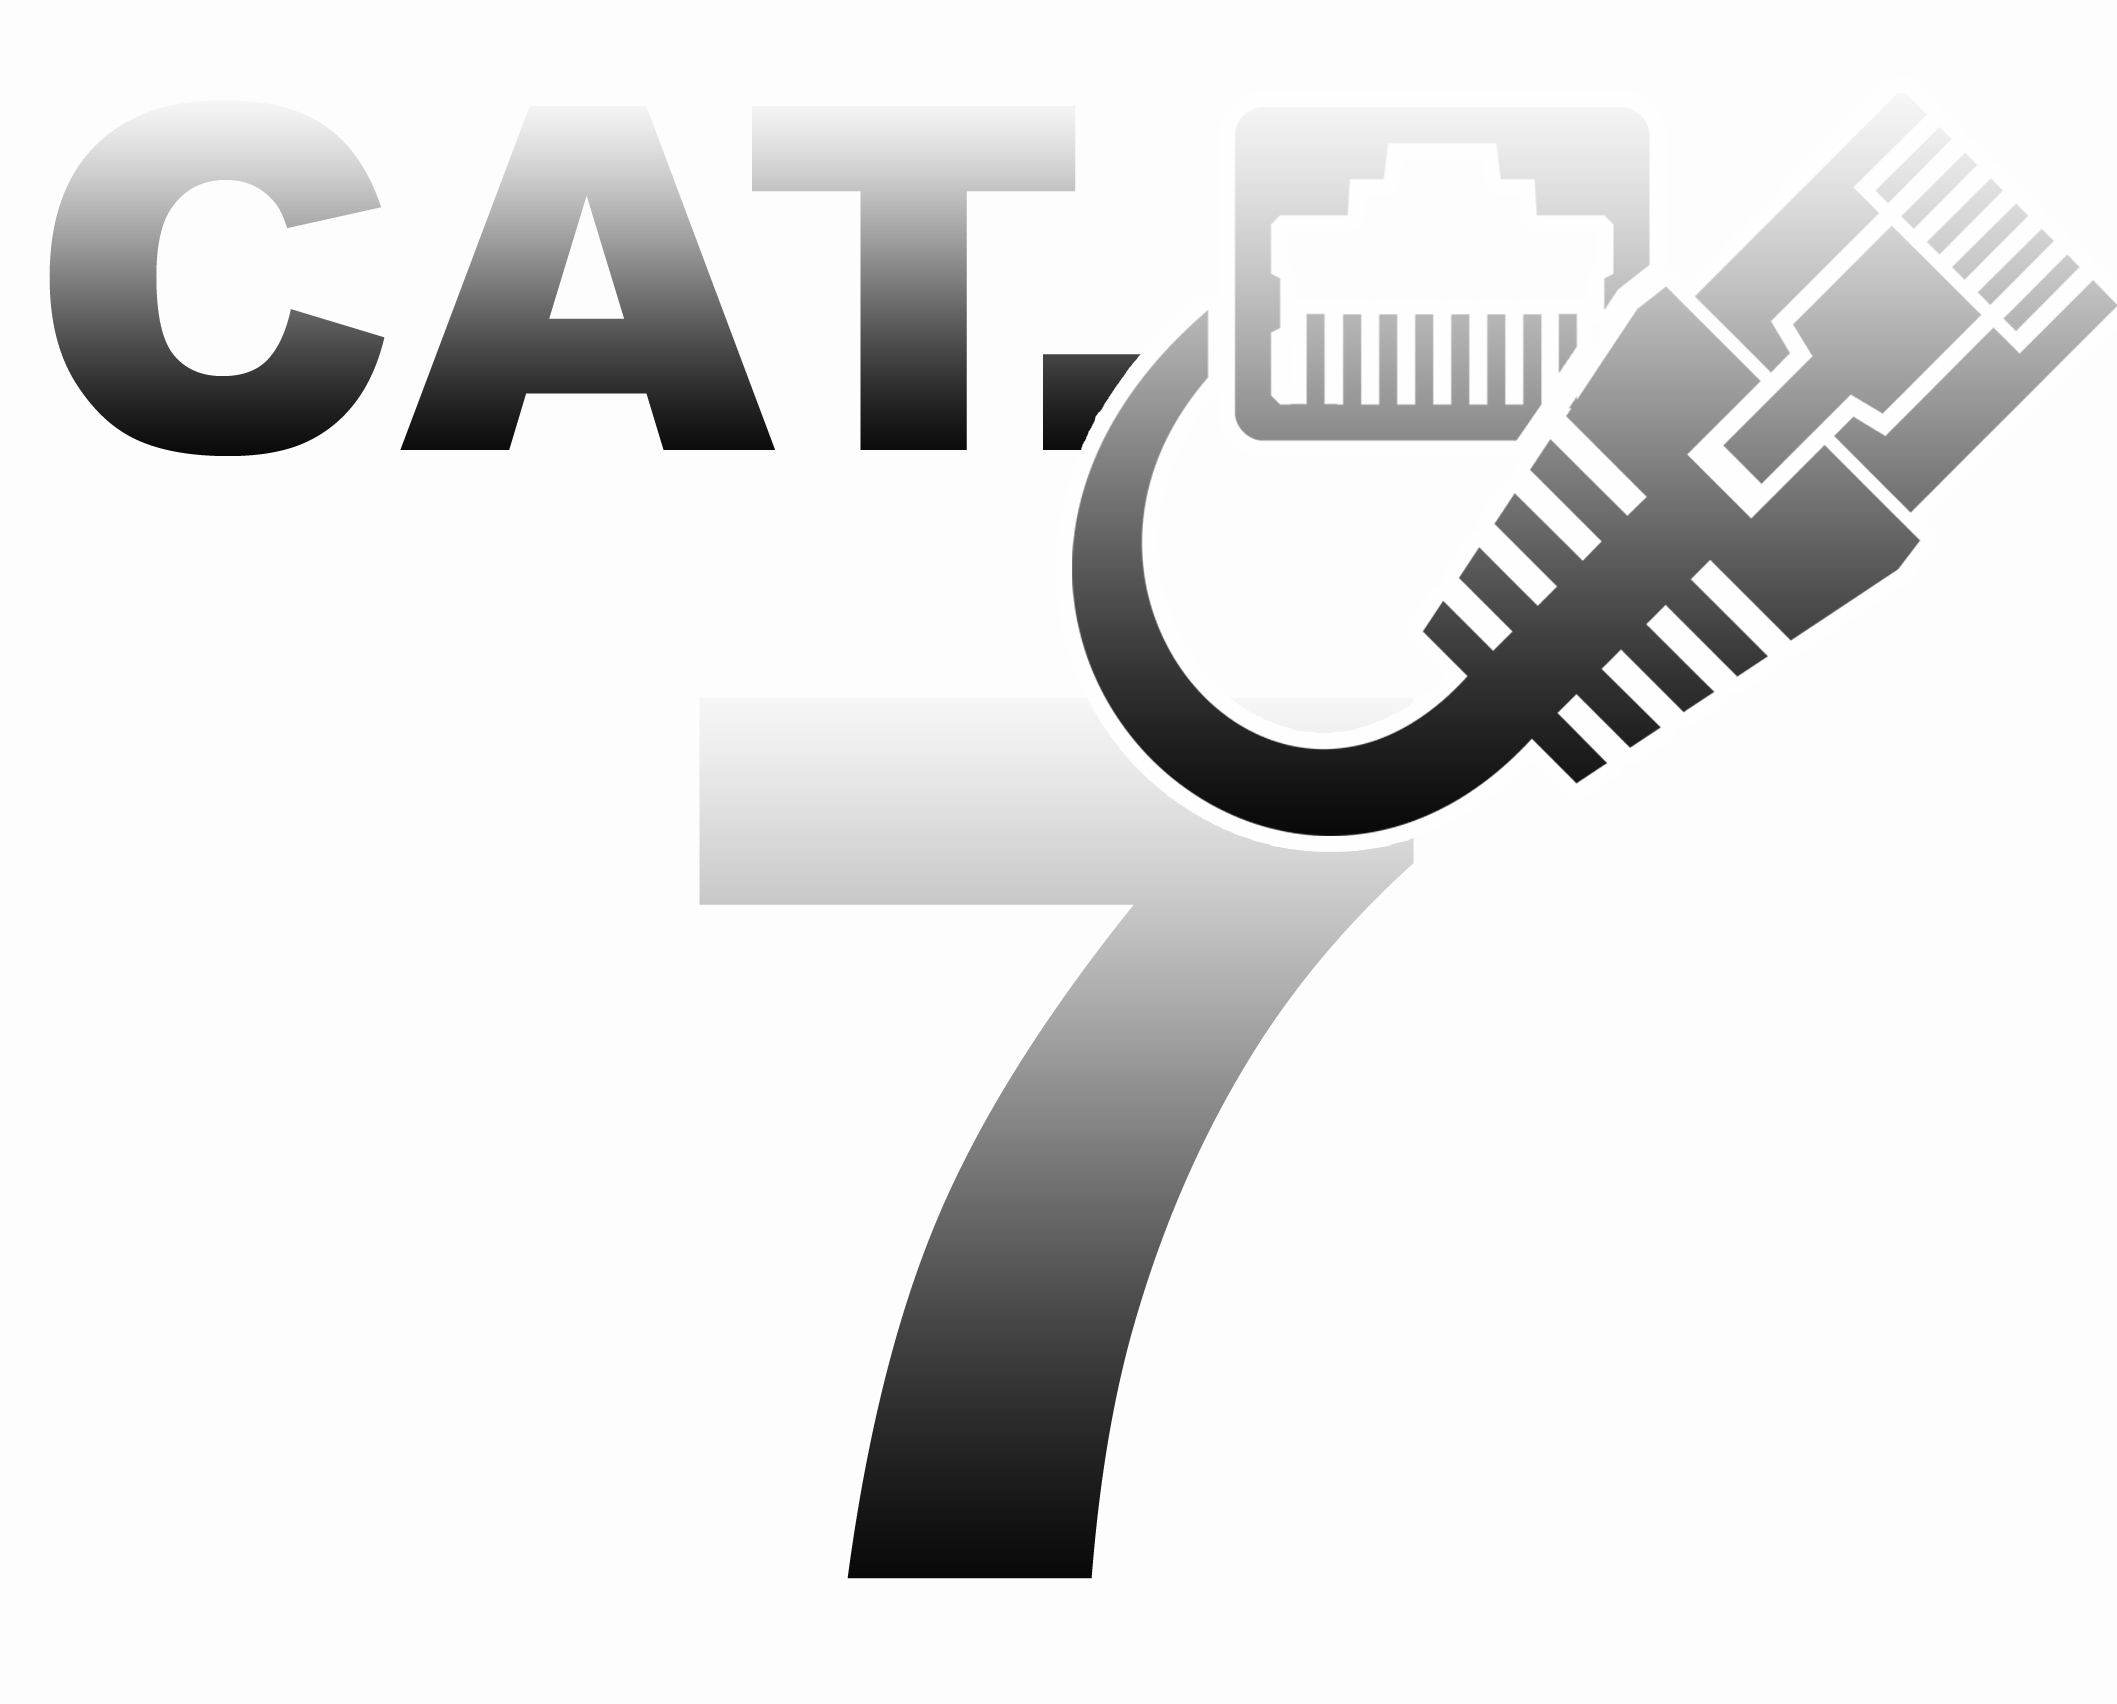 cat7 X